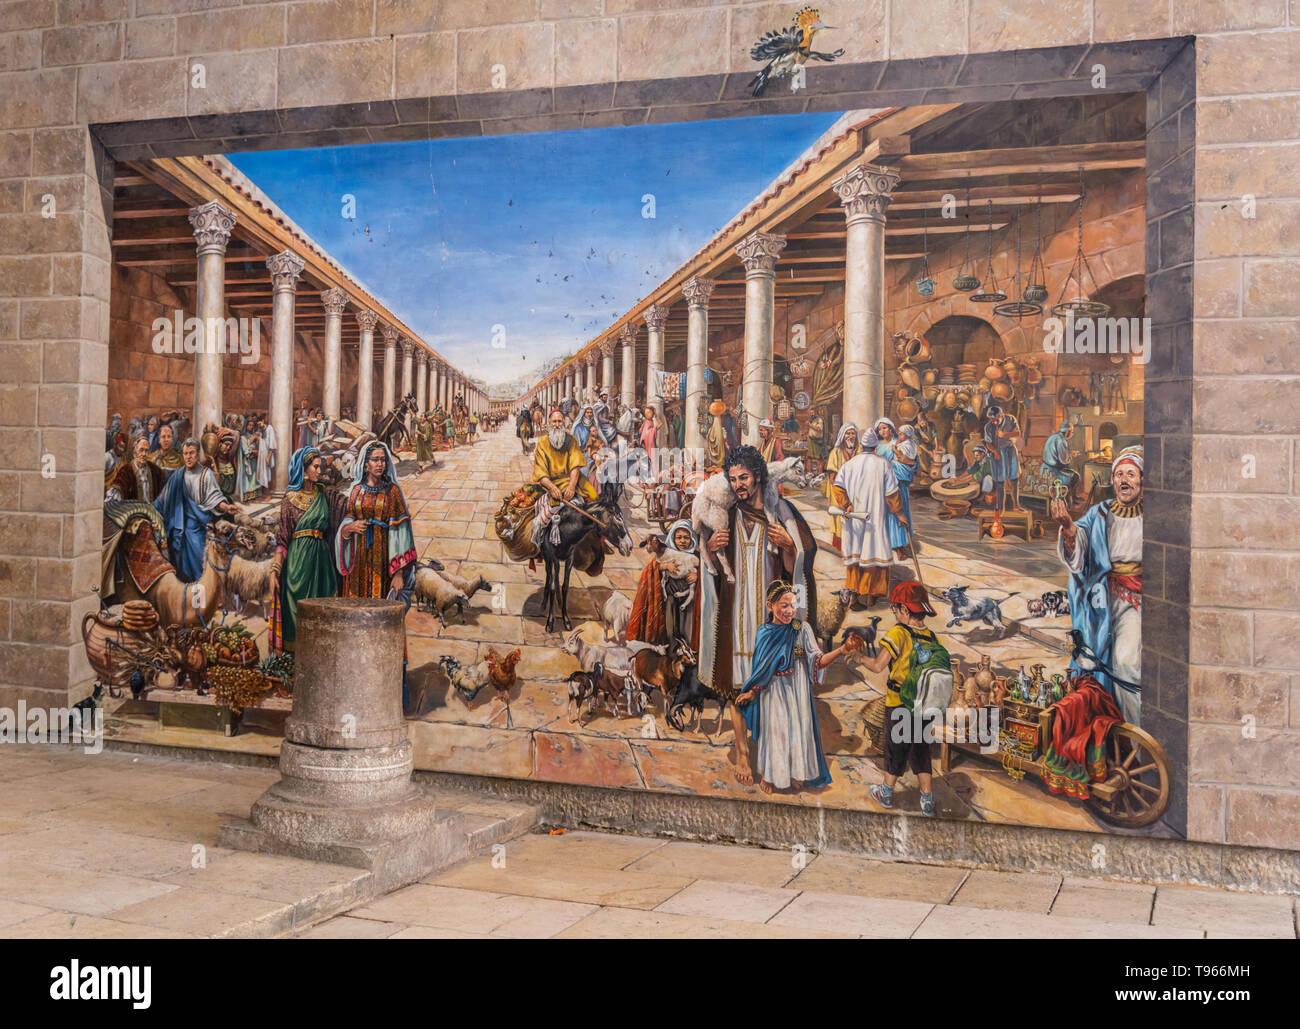 Israele Gerusalemme vecchia città moderna e contemporanea pittura murale del Cardo in epoca romana Foto Stock